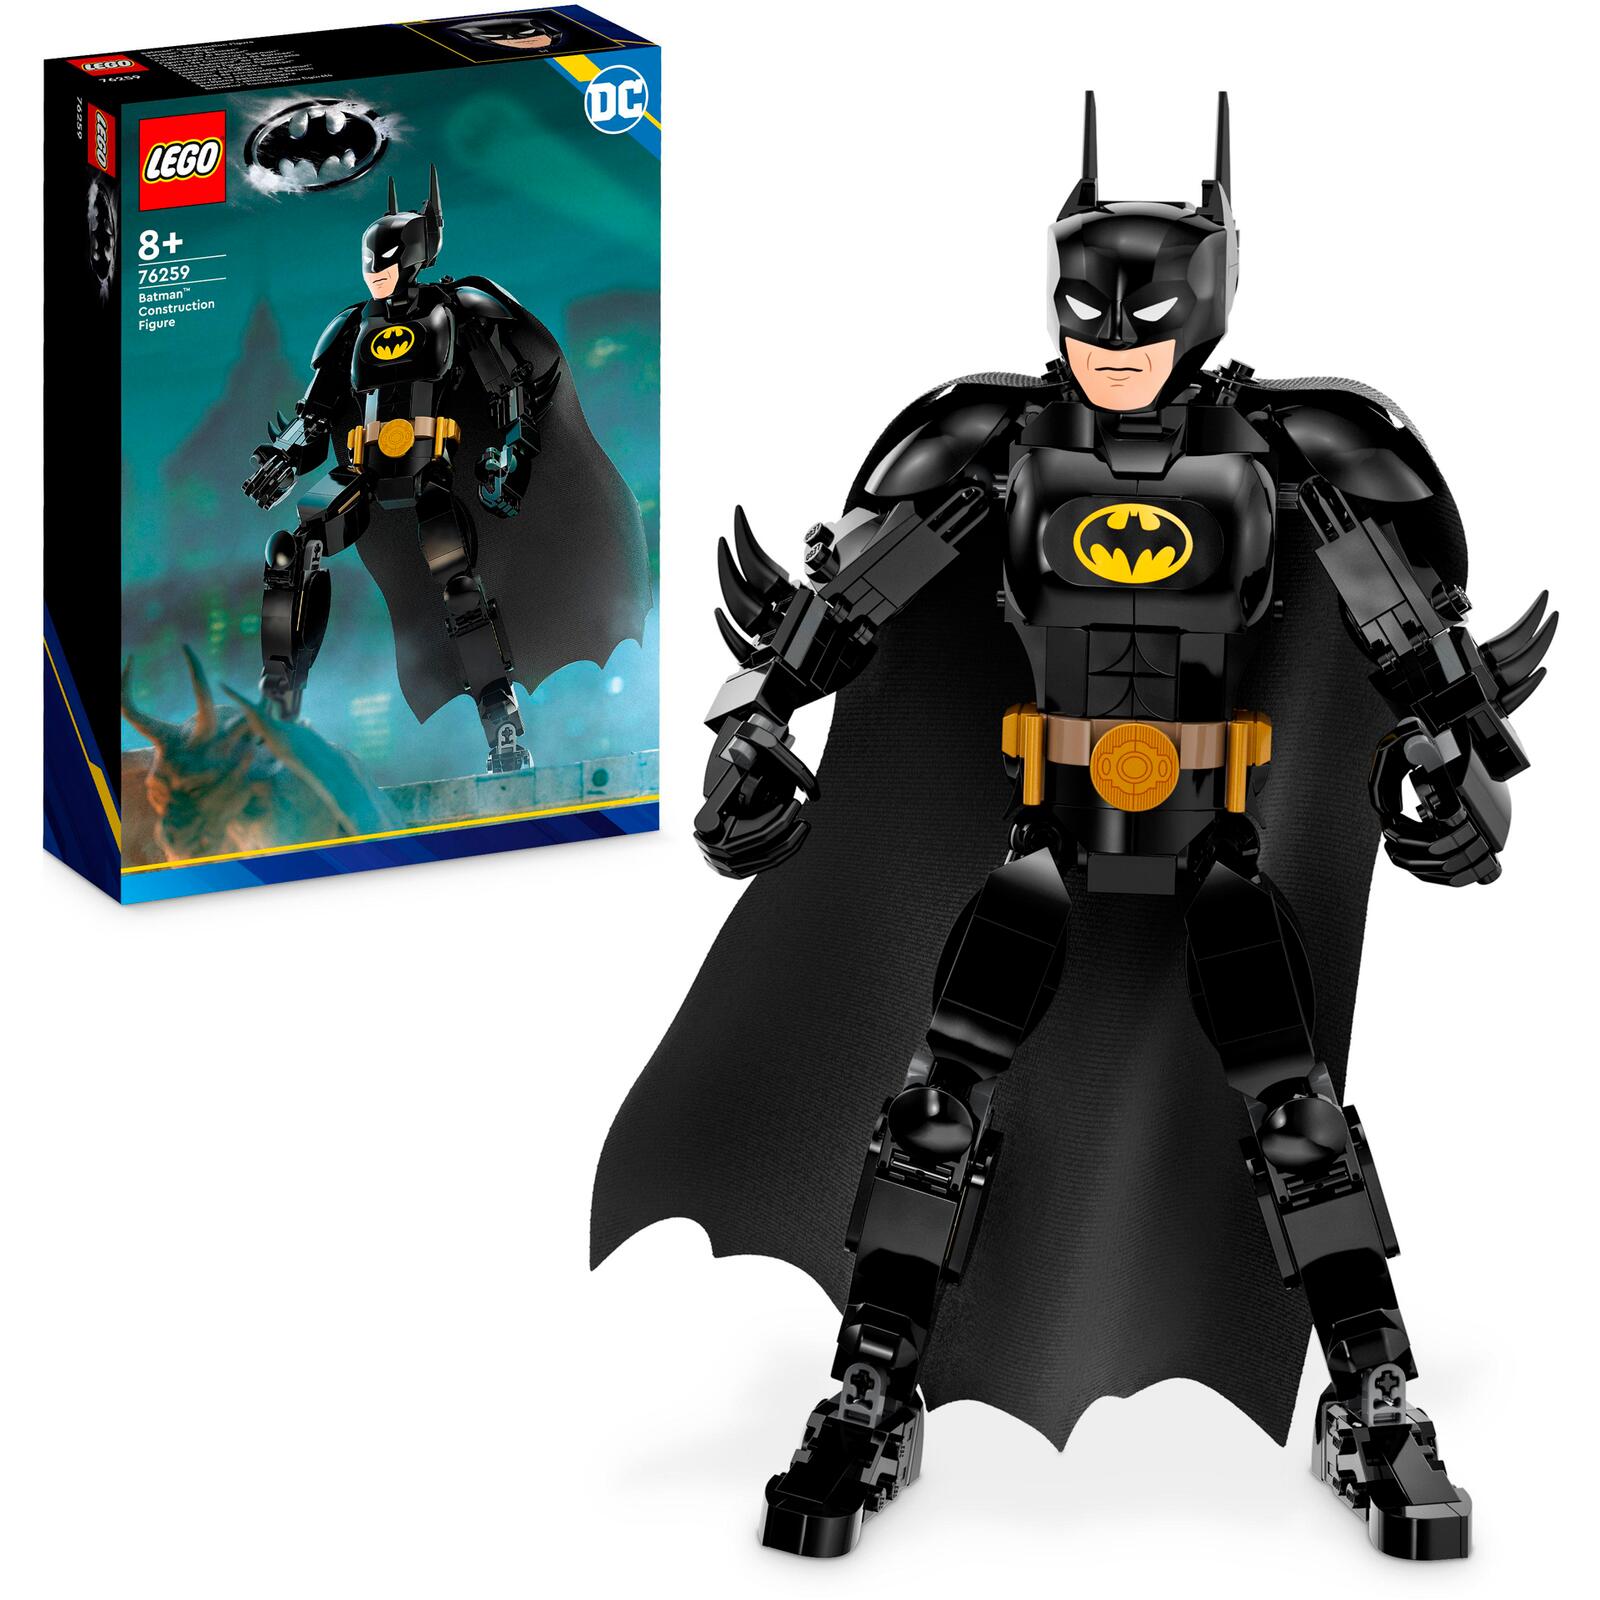 LEGO Batman Batman Baufigur 76259